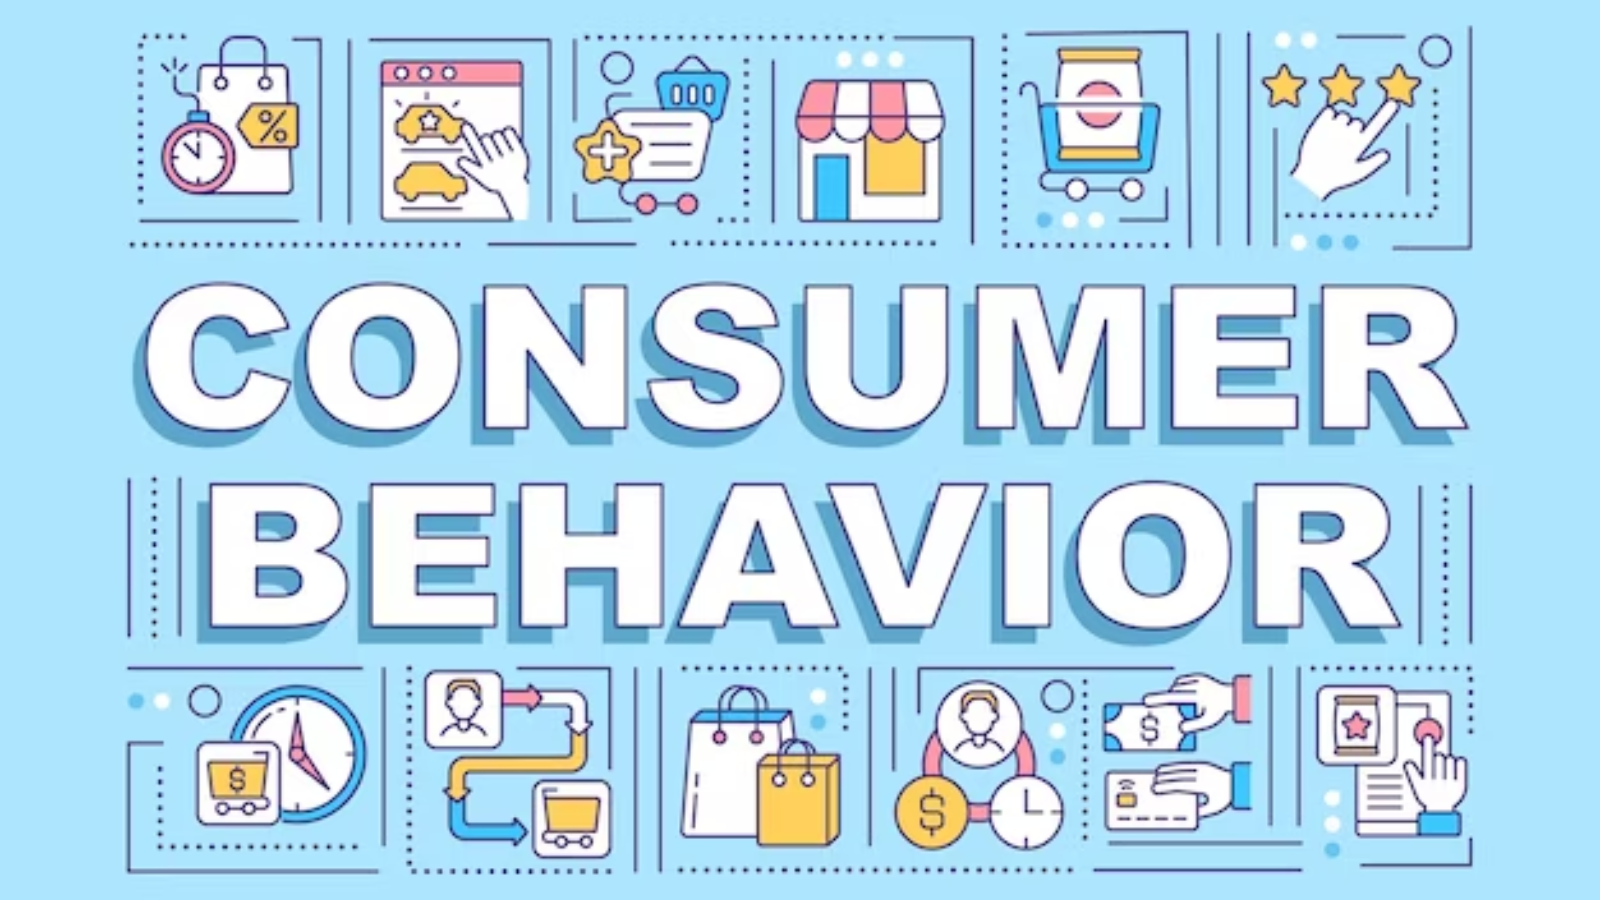 Predicting the Unpredictable - Consumer Behavior and Preferences